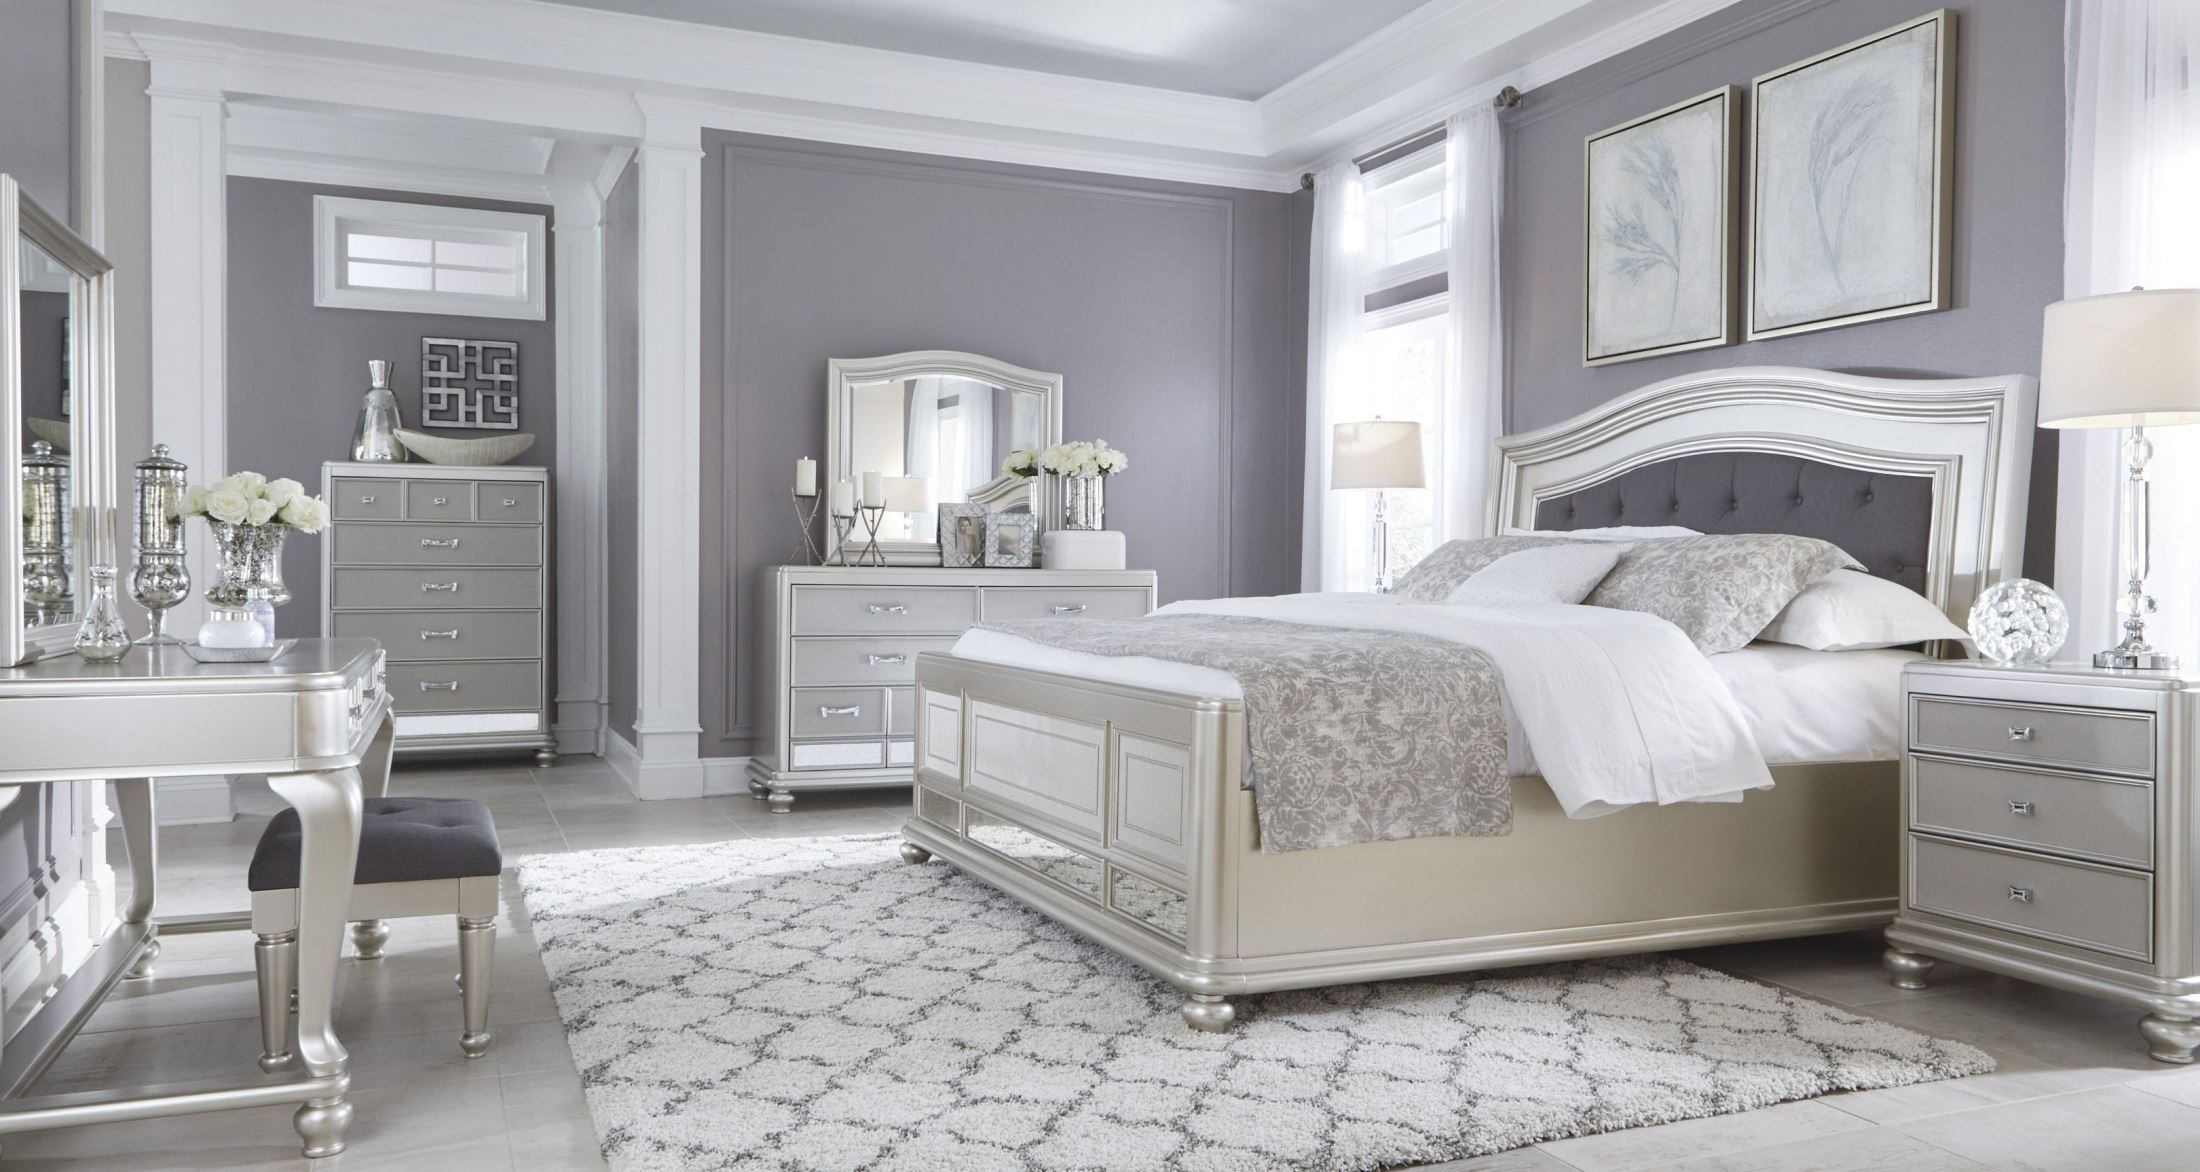 غرفة نوم ذات طابع مودرن باللون الفضي المميز